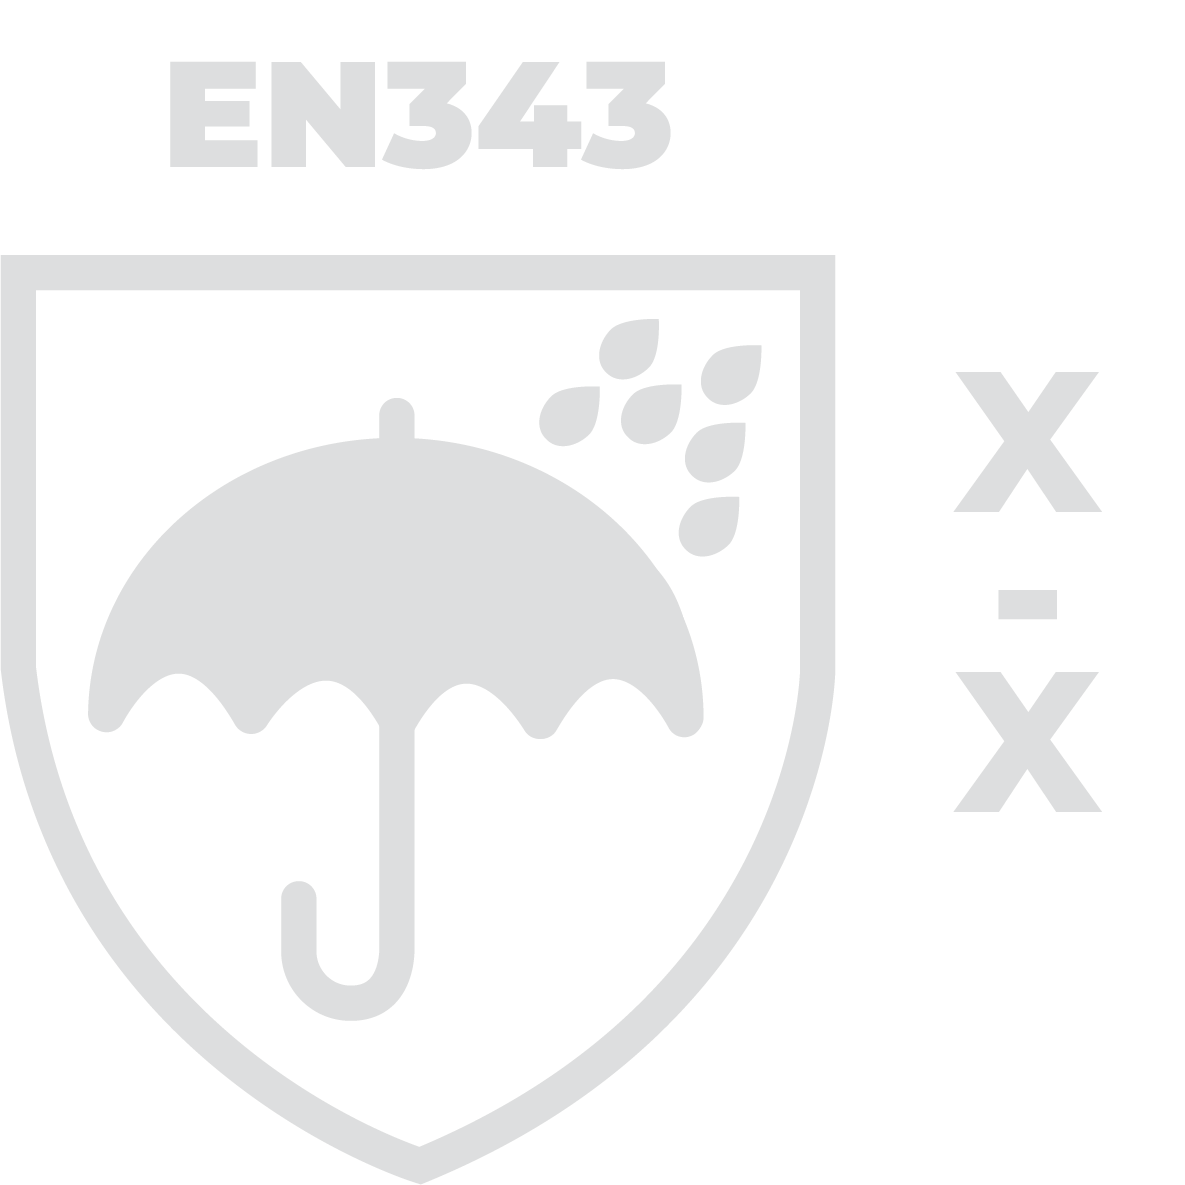 en 343 rain protection symbol